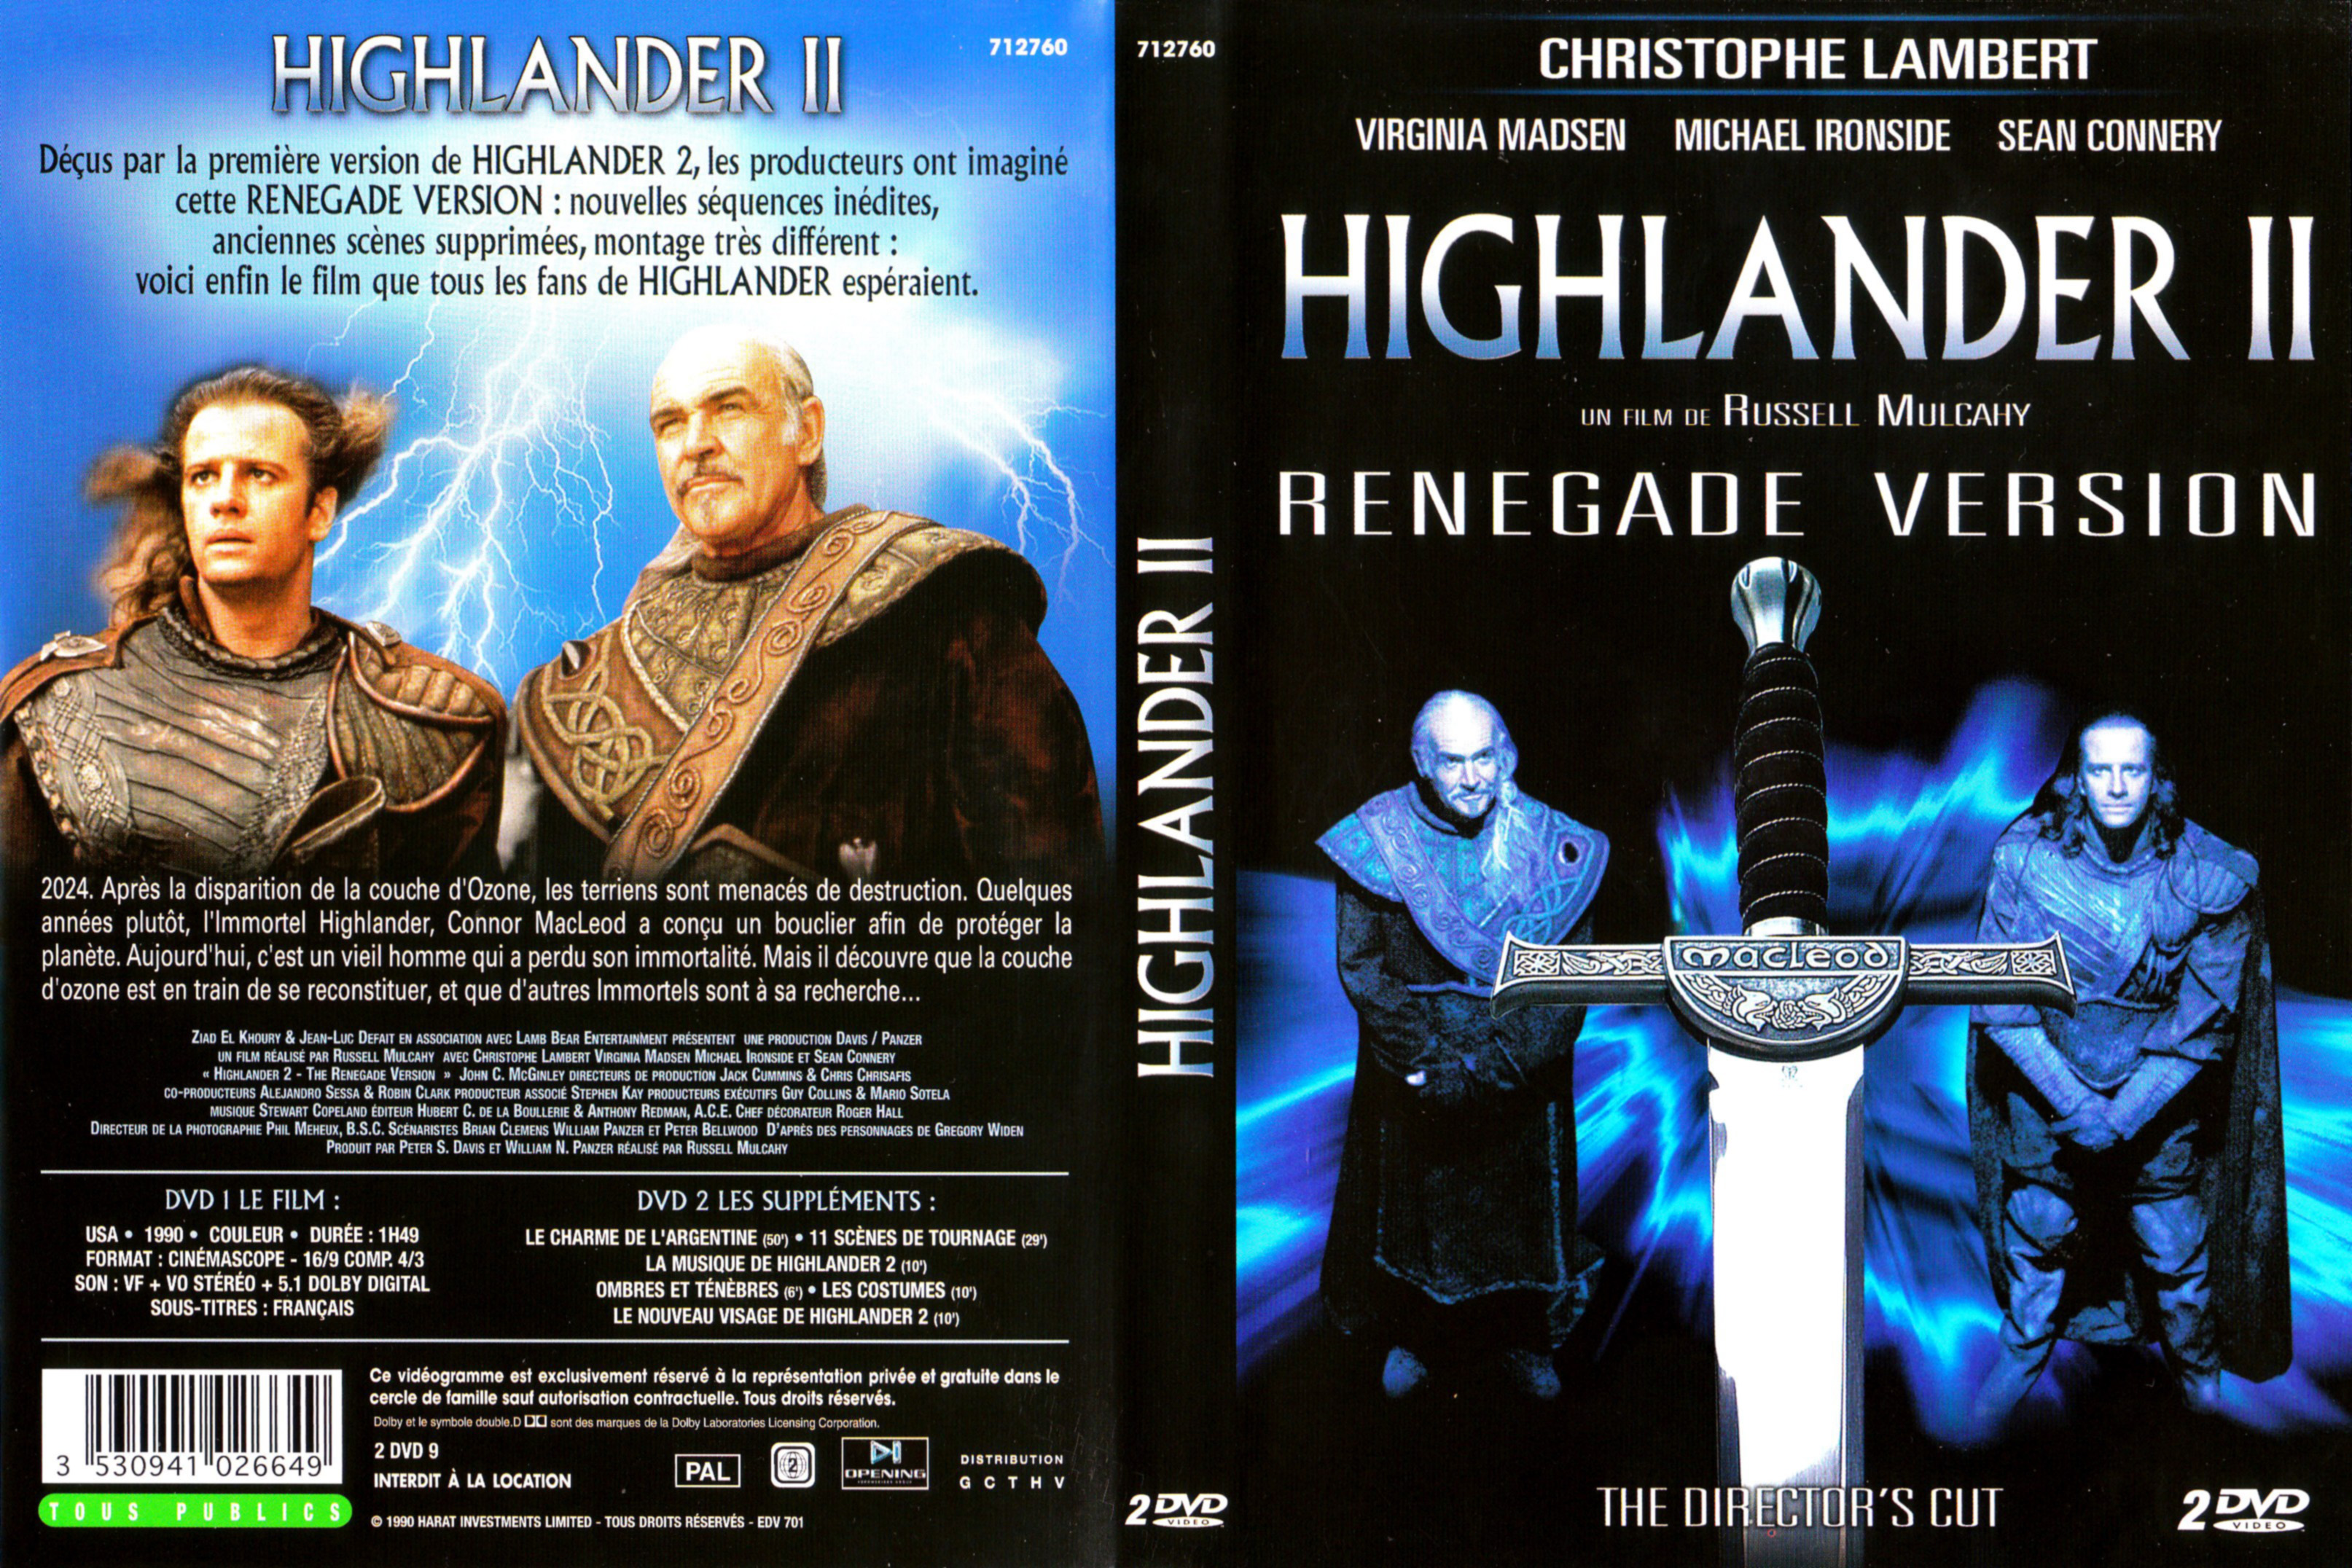 Jaquette DVD Highlander 2 v3